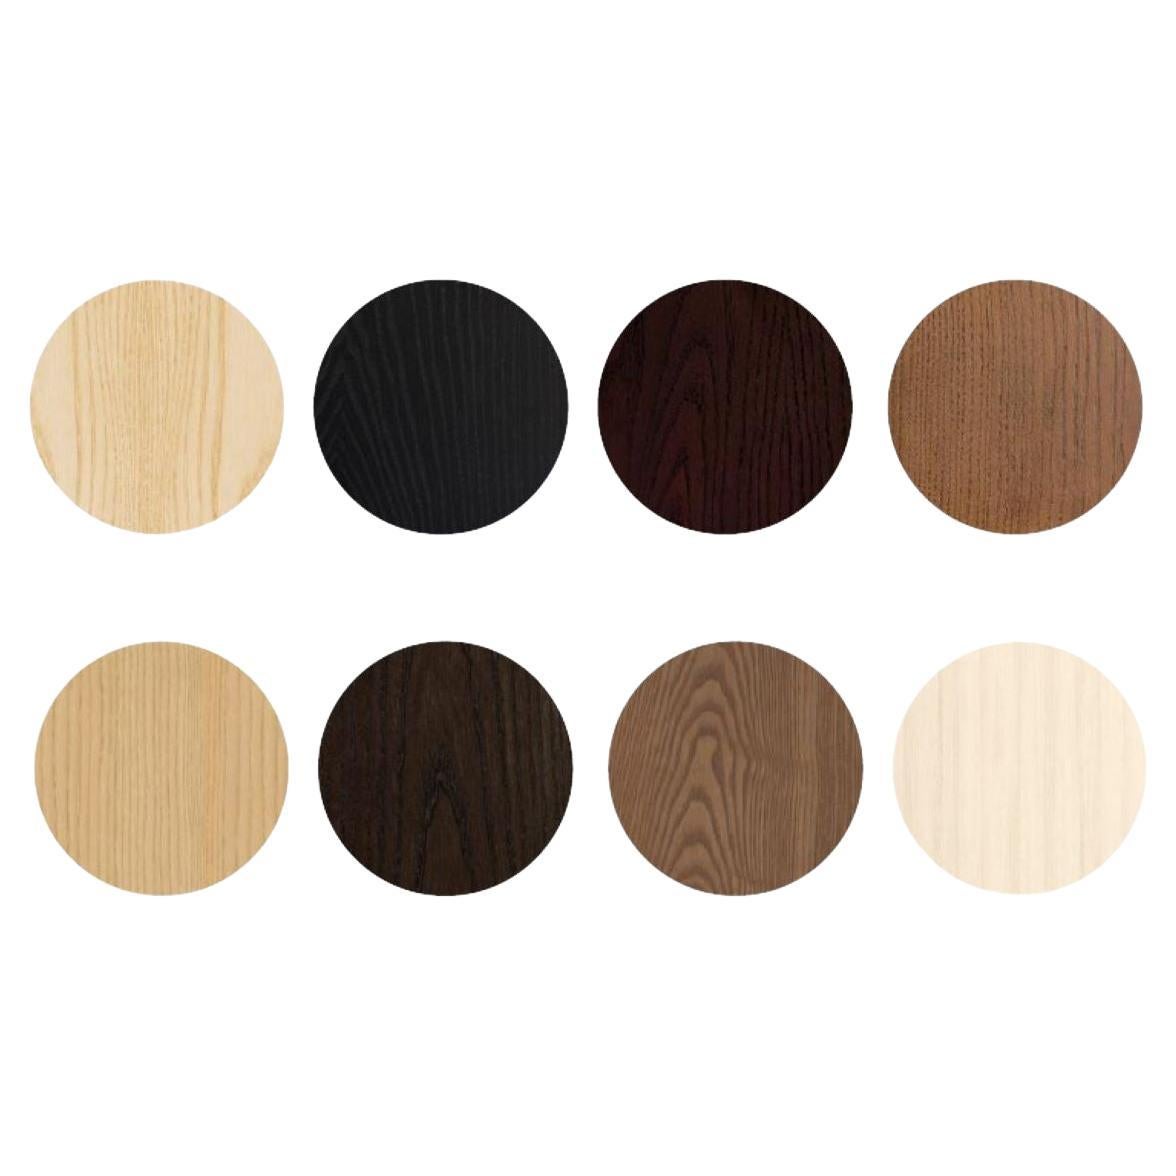 Auswahl von Mustern für Möbel aus Eschenholz